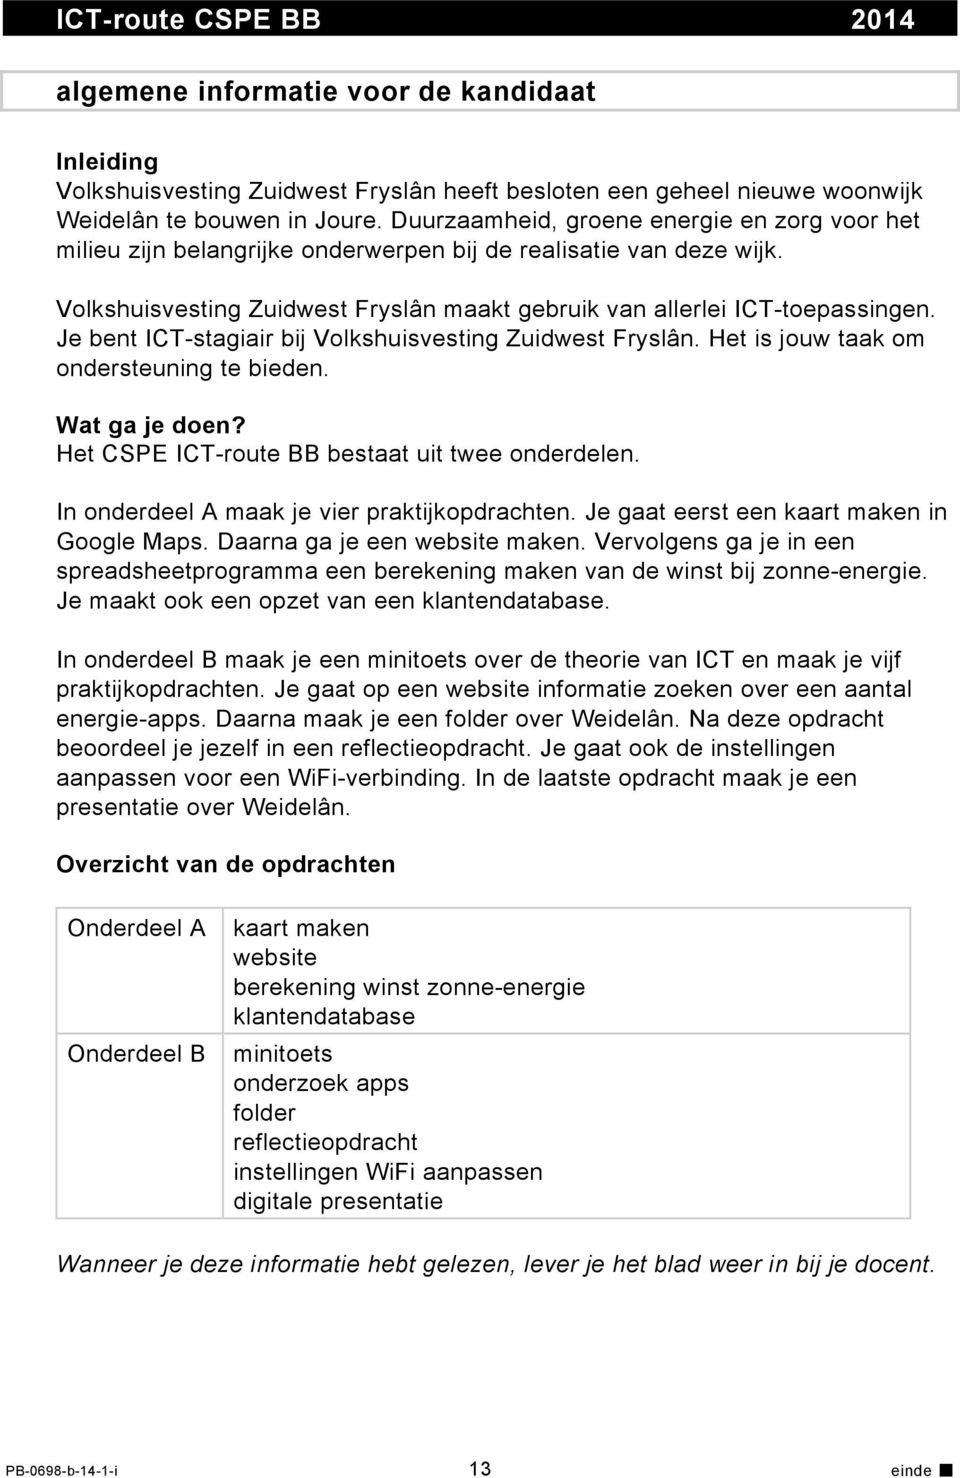 Je bent ICT-stagiair bij Volkshuisvesting Zuidwest Fryslân. Het is jouw taak om ondersteuning te bieden. Wat ga je doen? Het CSPE ICT-route BB bestaat uit twee onderdelen.